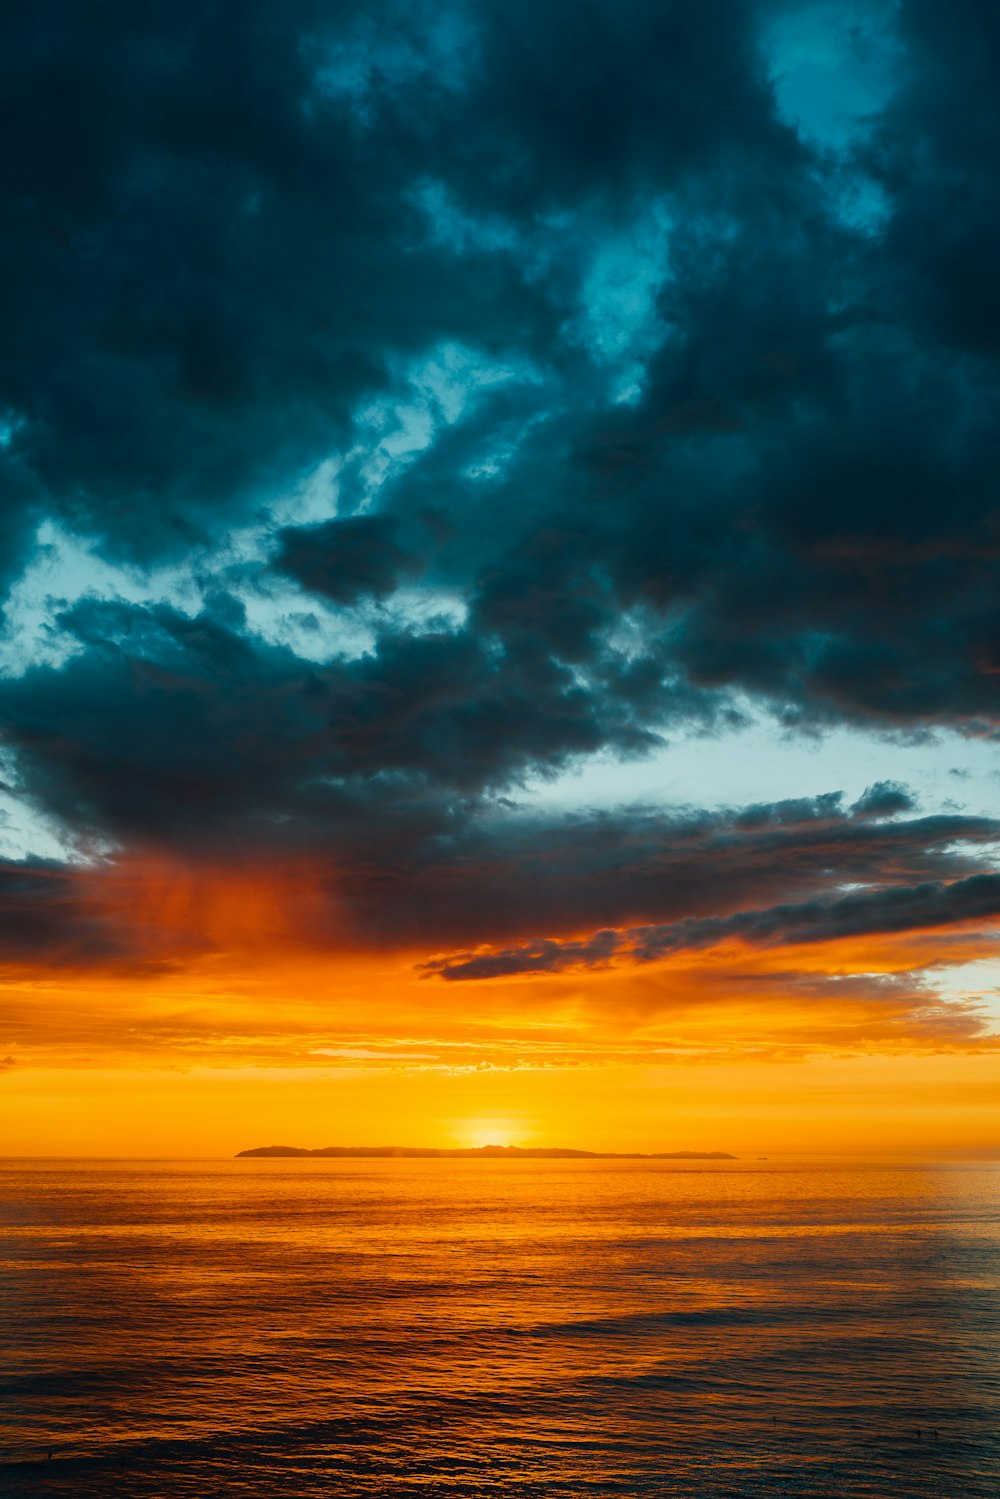 Grüne und schwarze Wolken bedecken teilweise den orangefarbenen Himmel über dem Meer bei Sonnenuntergang